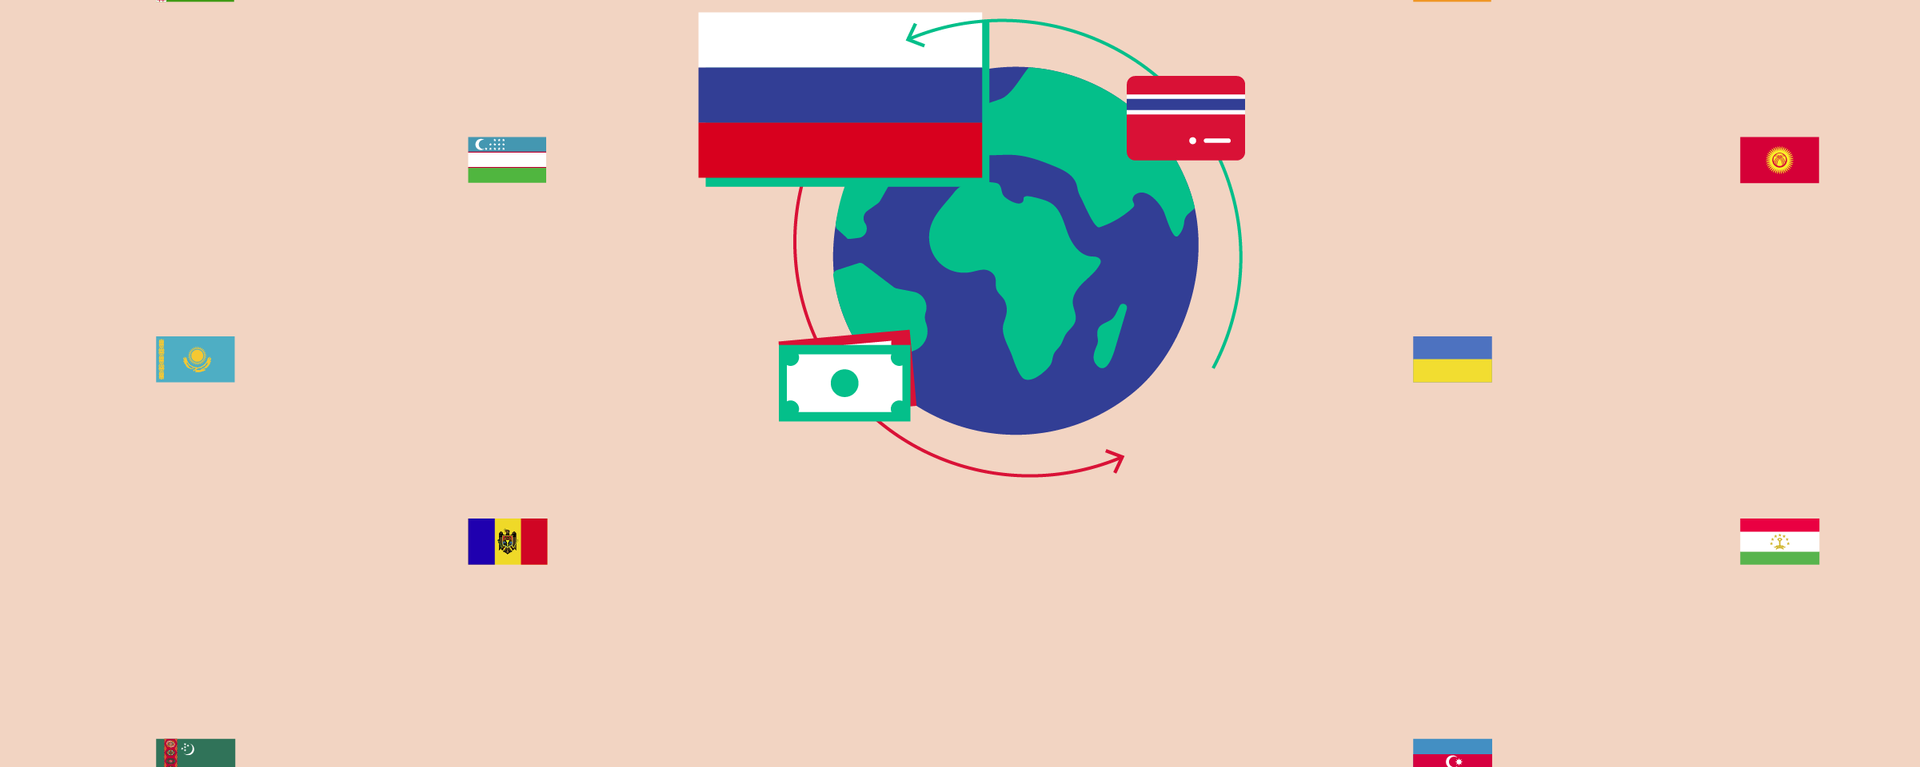 Денежные переводы из России в страны СНГ в 2021 году - чем удивил Узбекистан - Sputnik Узбекистан, 1920, 16.07.2021